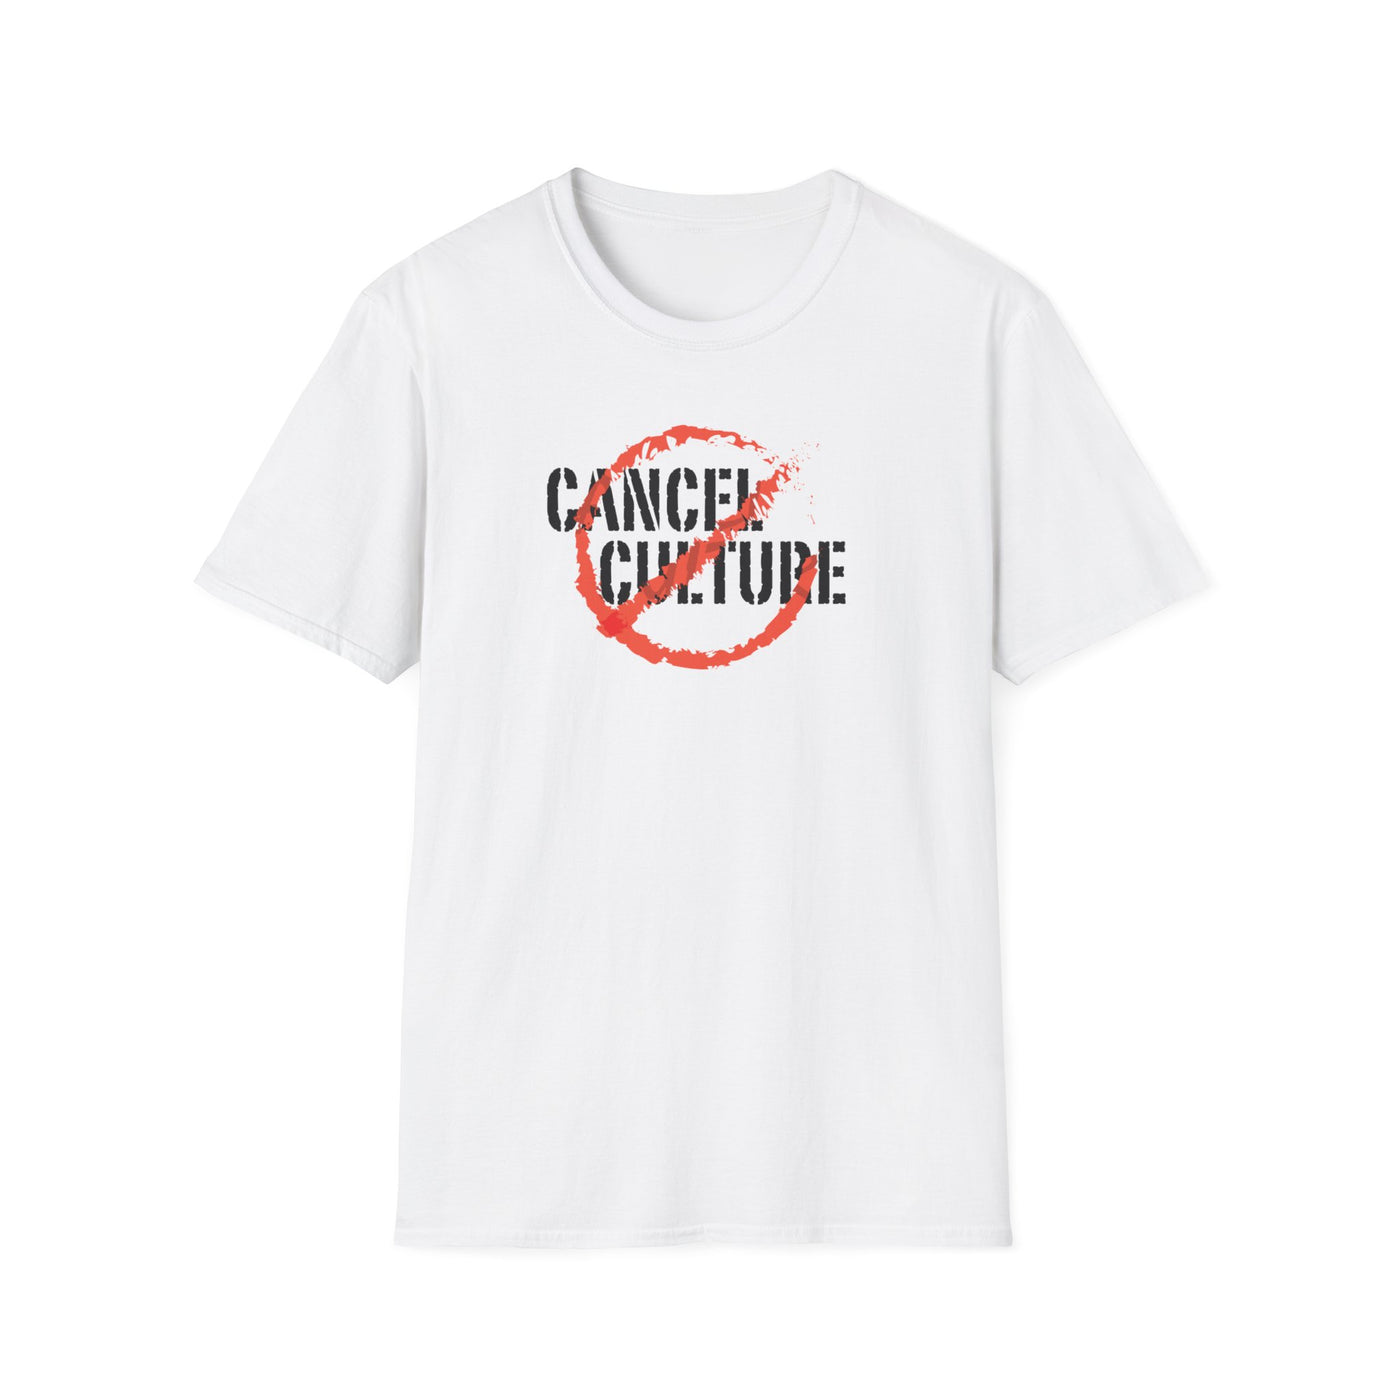 Cancel Cancel Culture Unisex T-Shirt